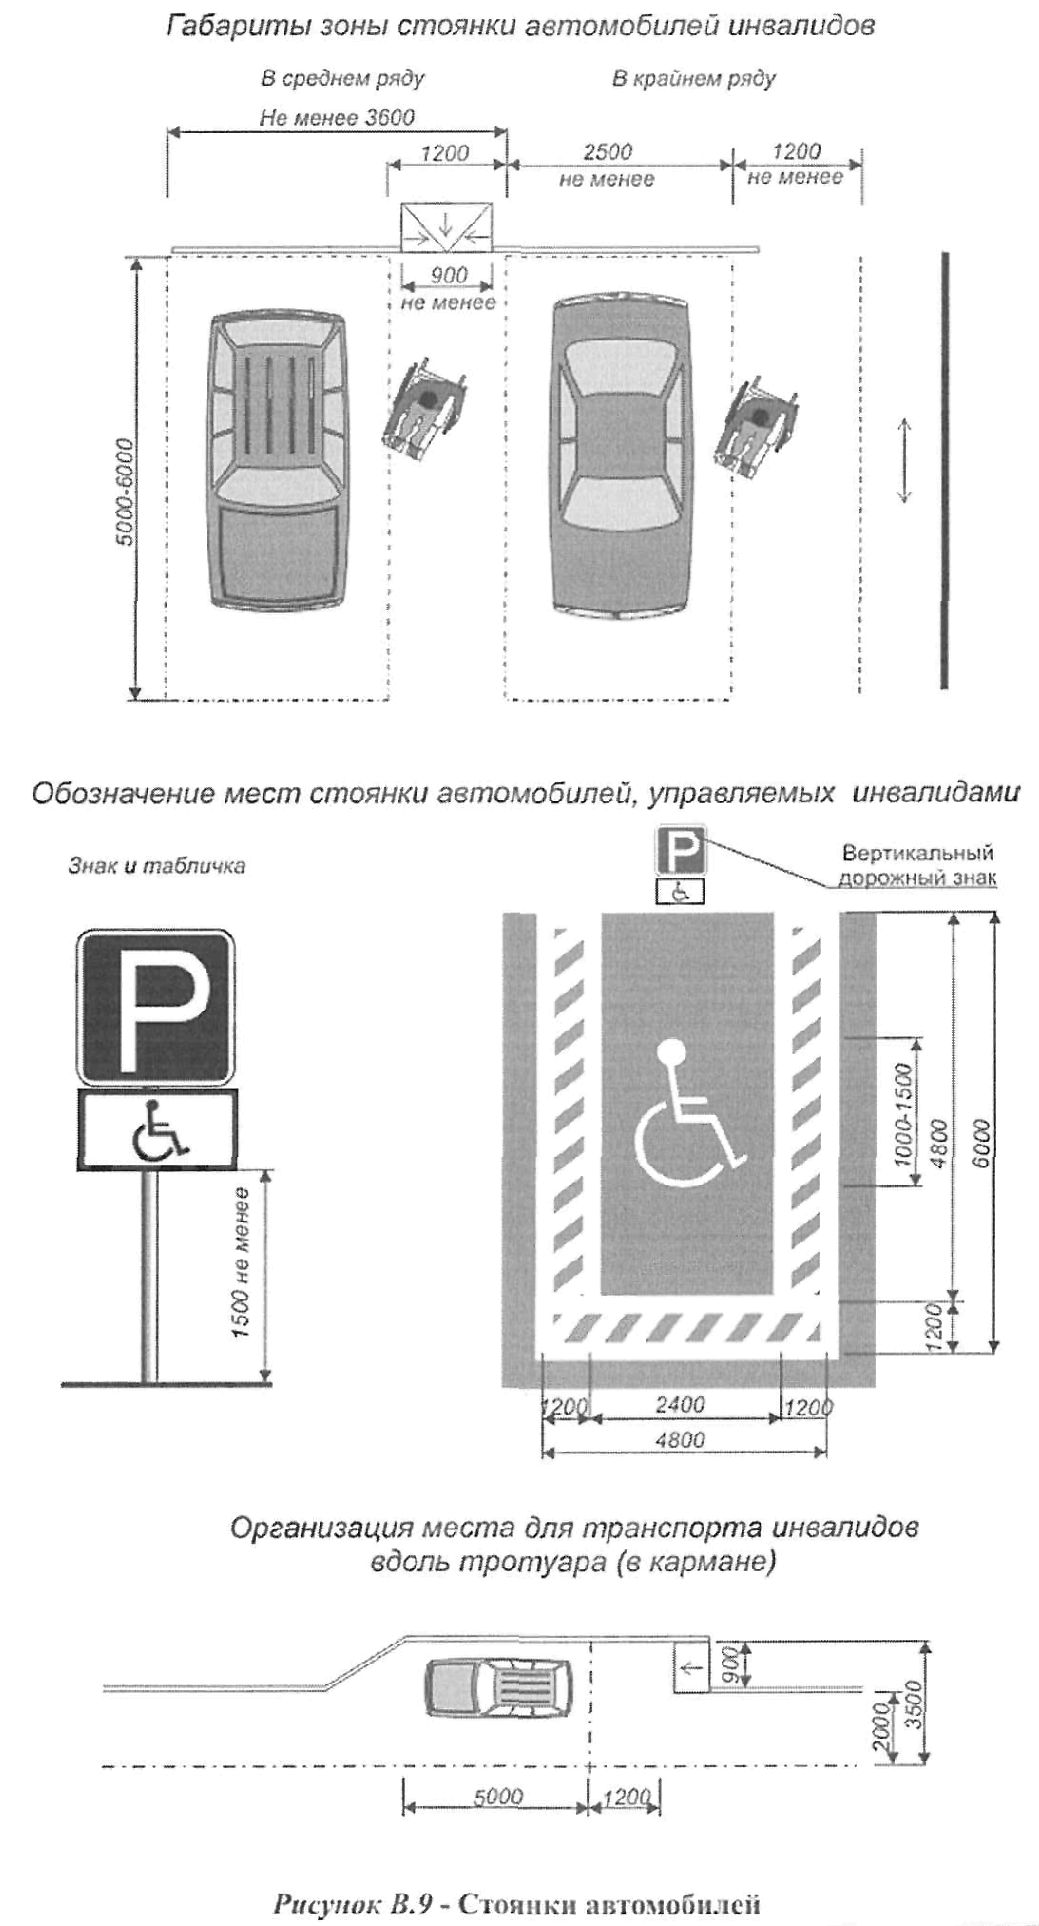 Гост парковки автомобилей. Ширина парковочного места для инвалидов по ГОСТУ. Разметка «парковка для МНГ».